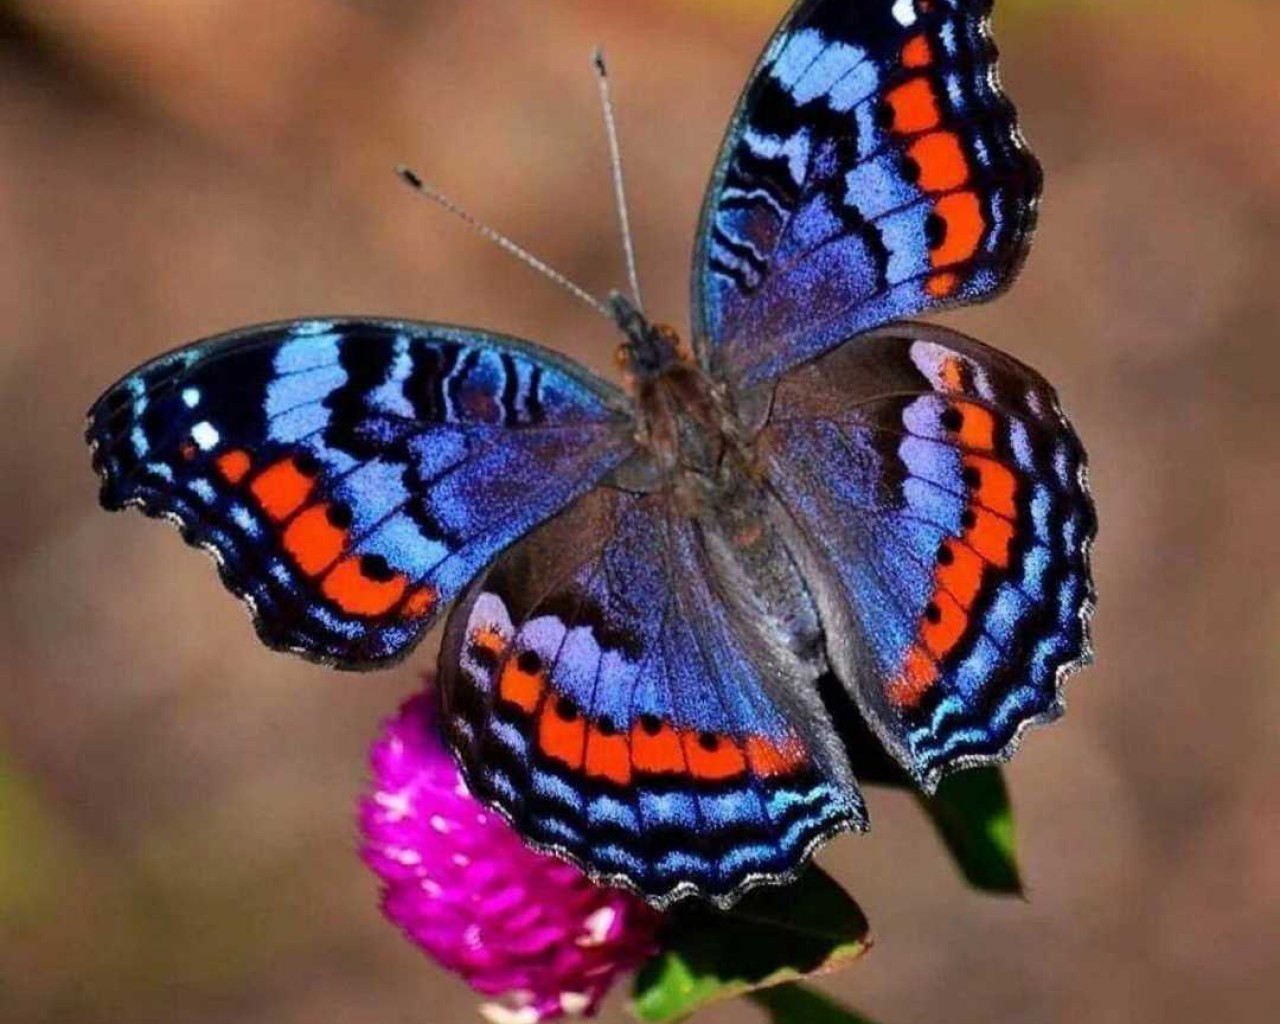 Таинственная и величественная красавица среди насекомых – неповторимая Бабочка, создательница прекрасных образов летних вечеров